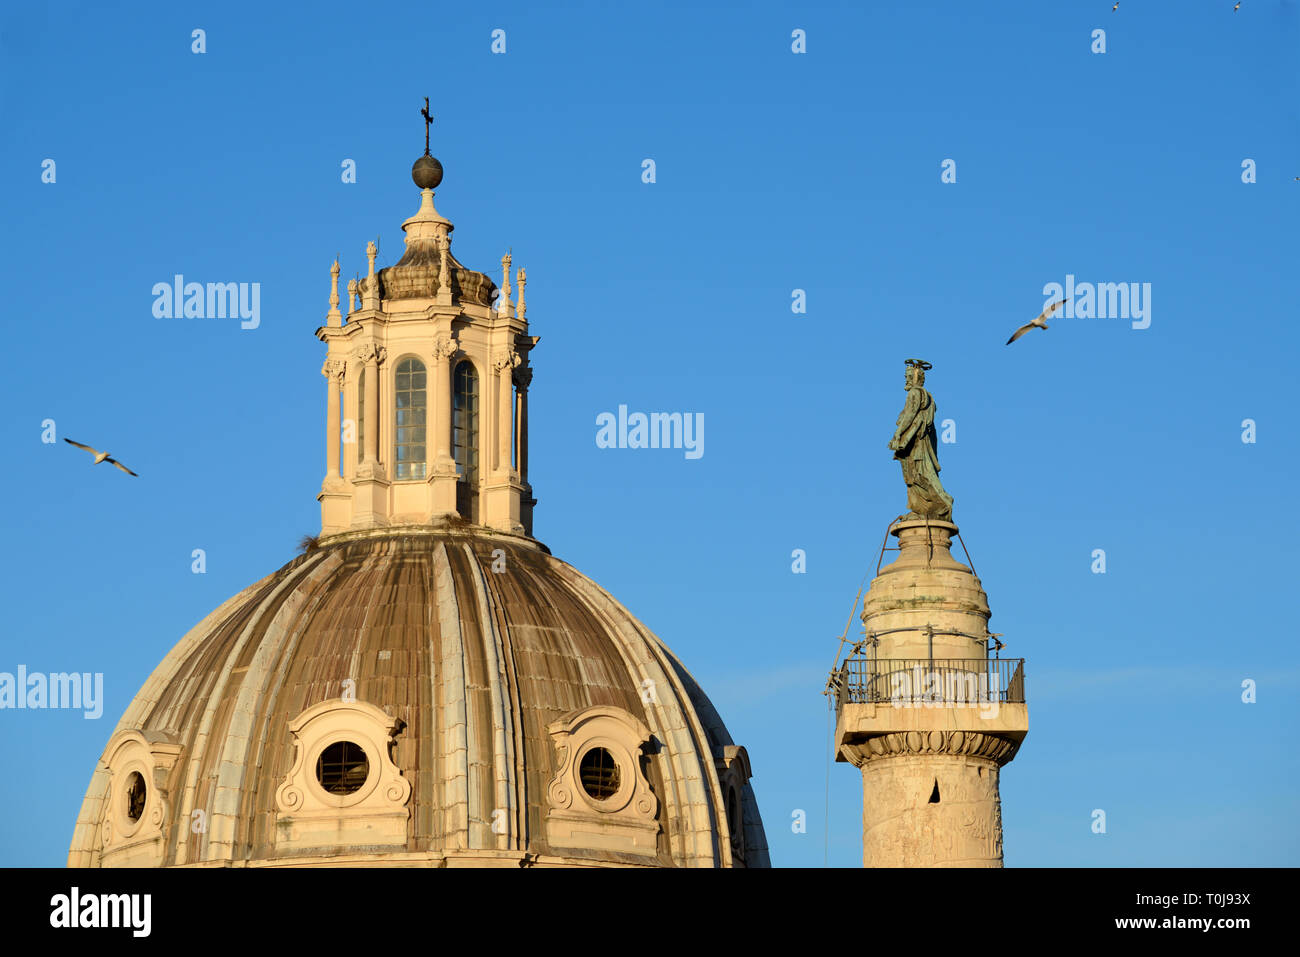 Lanterna del tetto, Torre del tetto, cupola o lucernario sulla cupola della chiesa di Santa Maria di Loreto (1507) & Colonna di Traiano (AD113) su Piazza Venezia Roma Italia Foto Stock